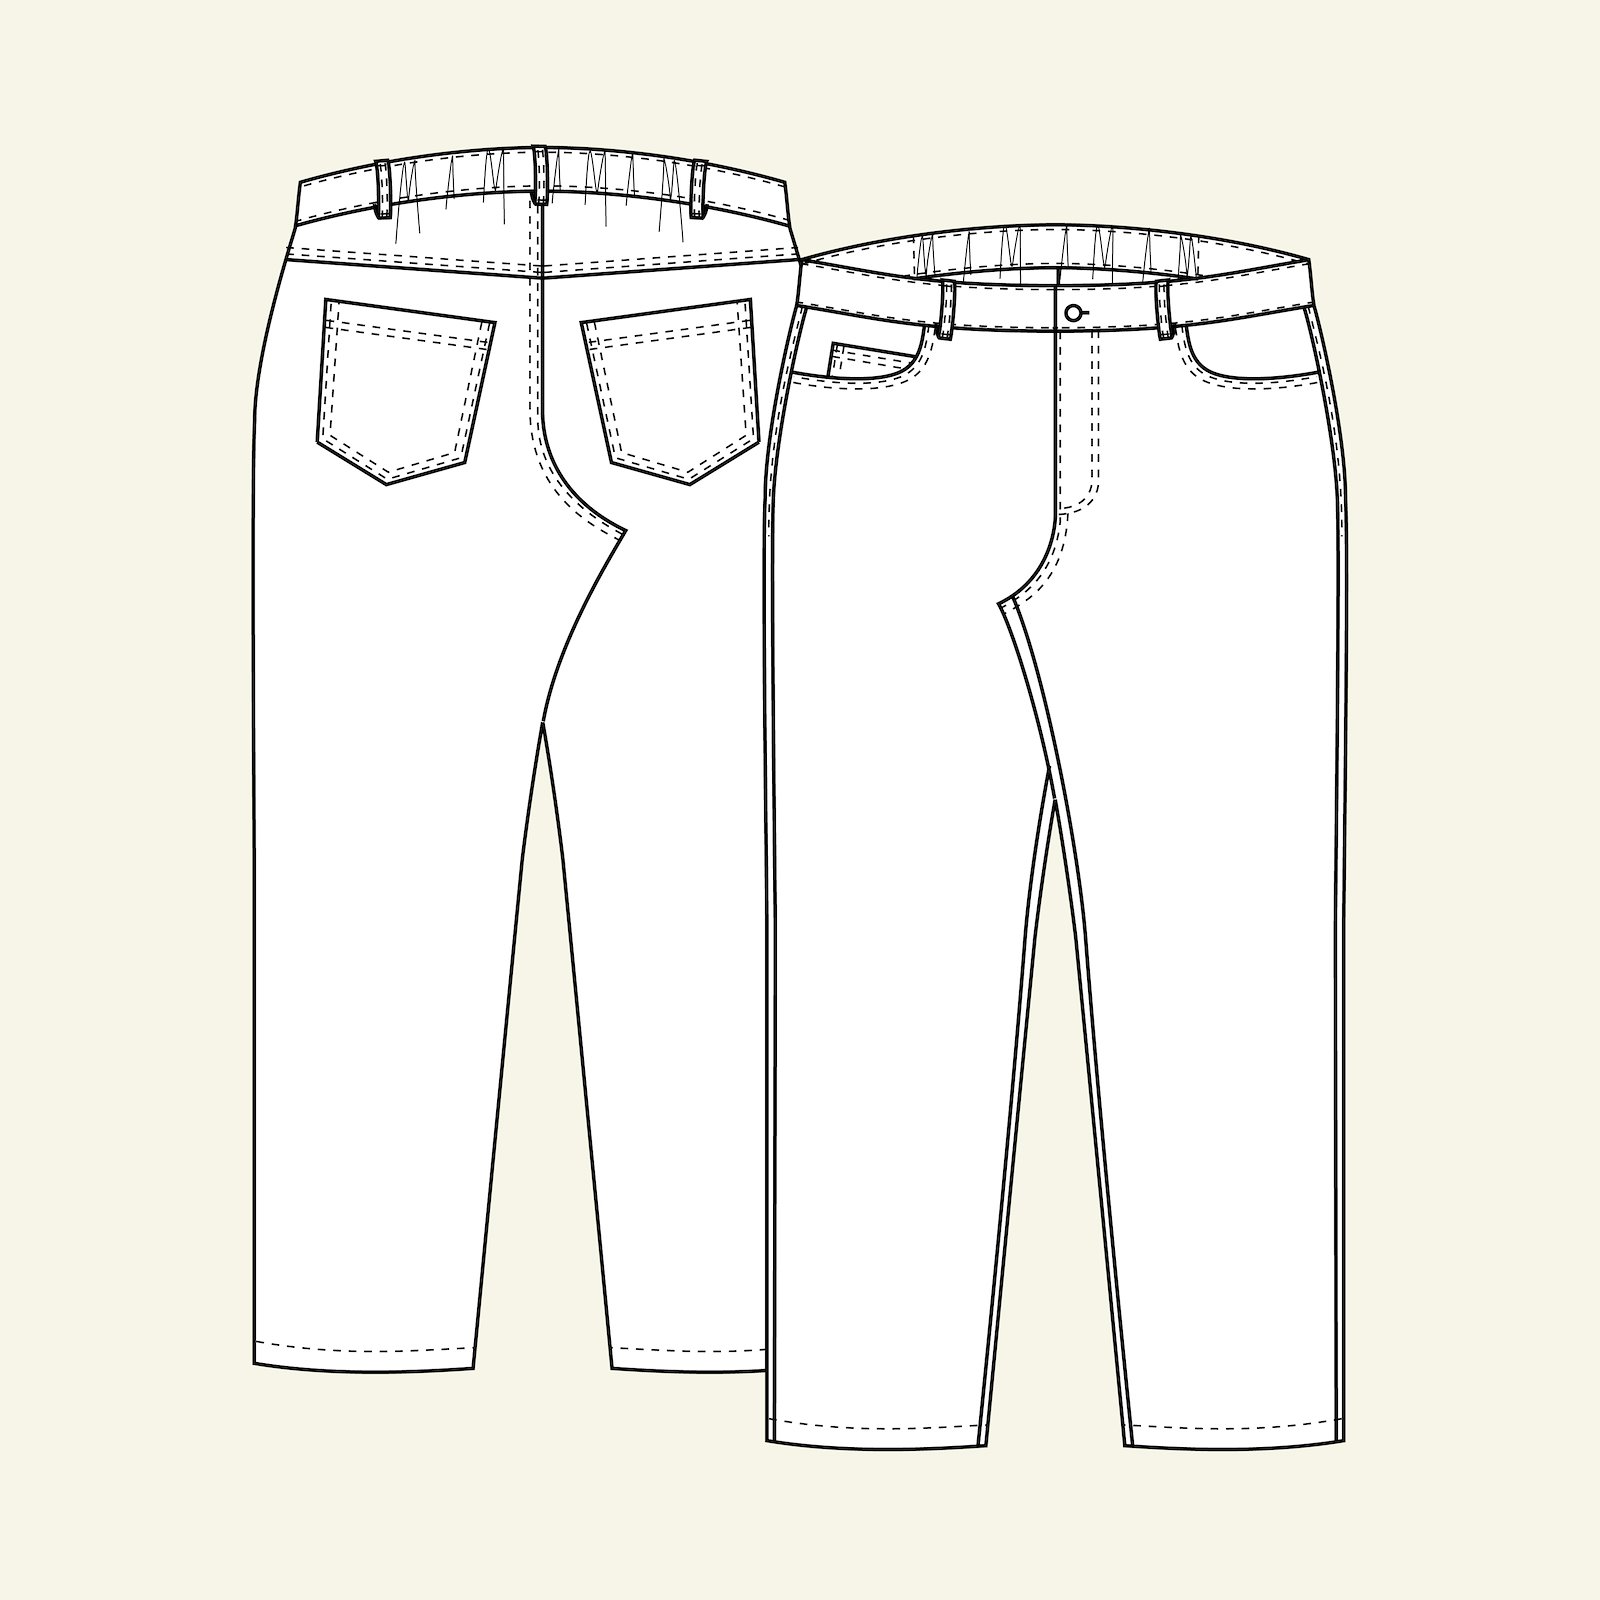 Klassisk jeans m/ strikk i linning b, 58 p70007000_p70007001_p70007002_p70007003_p70007004_pack_b